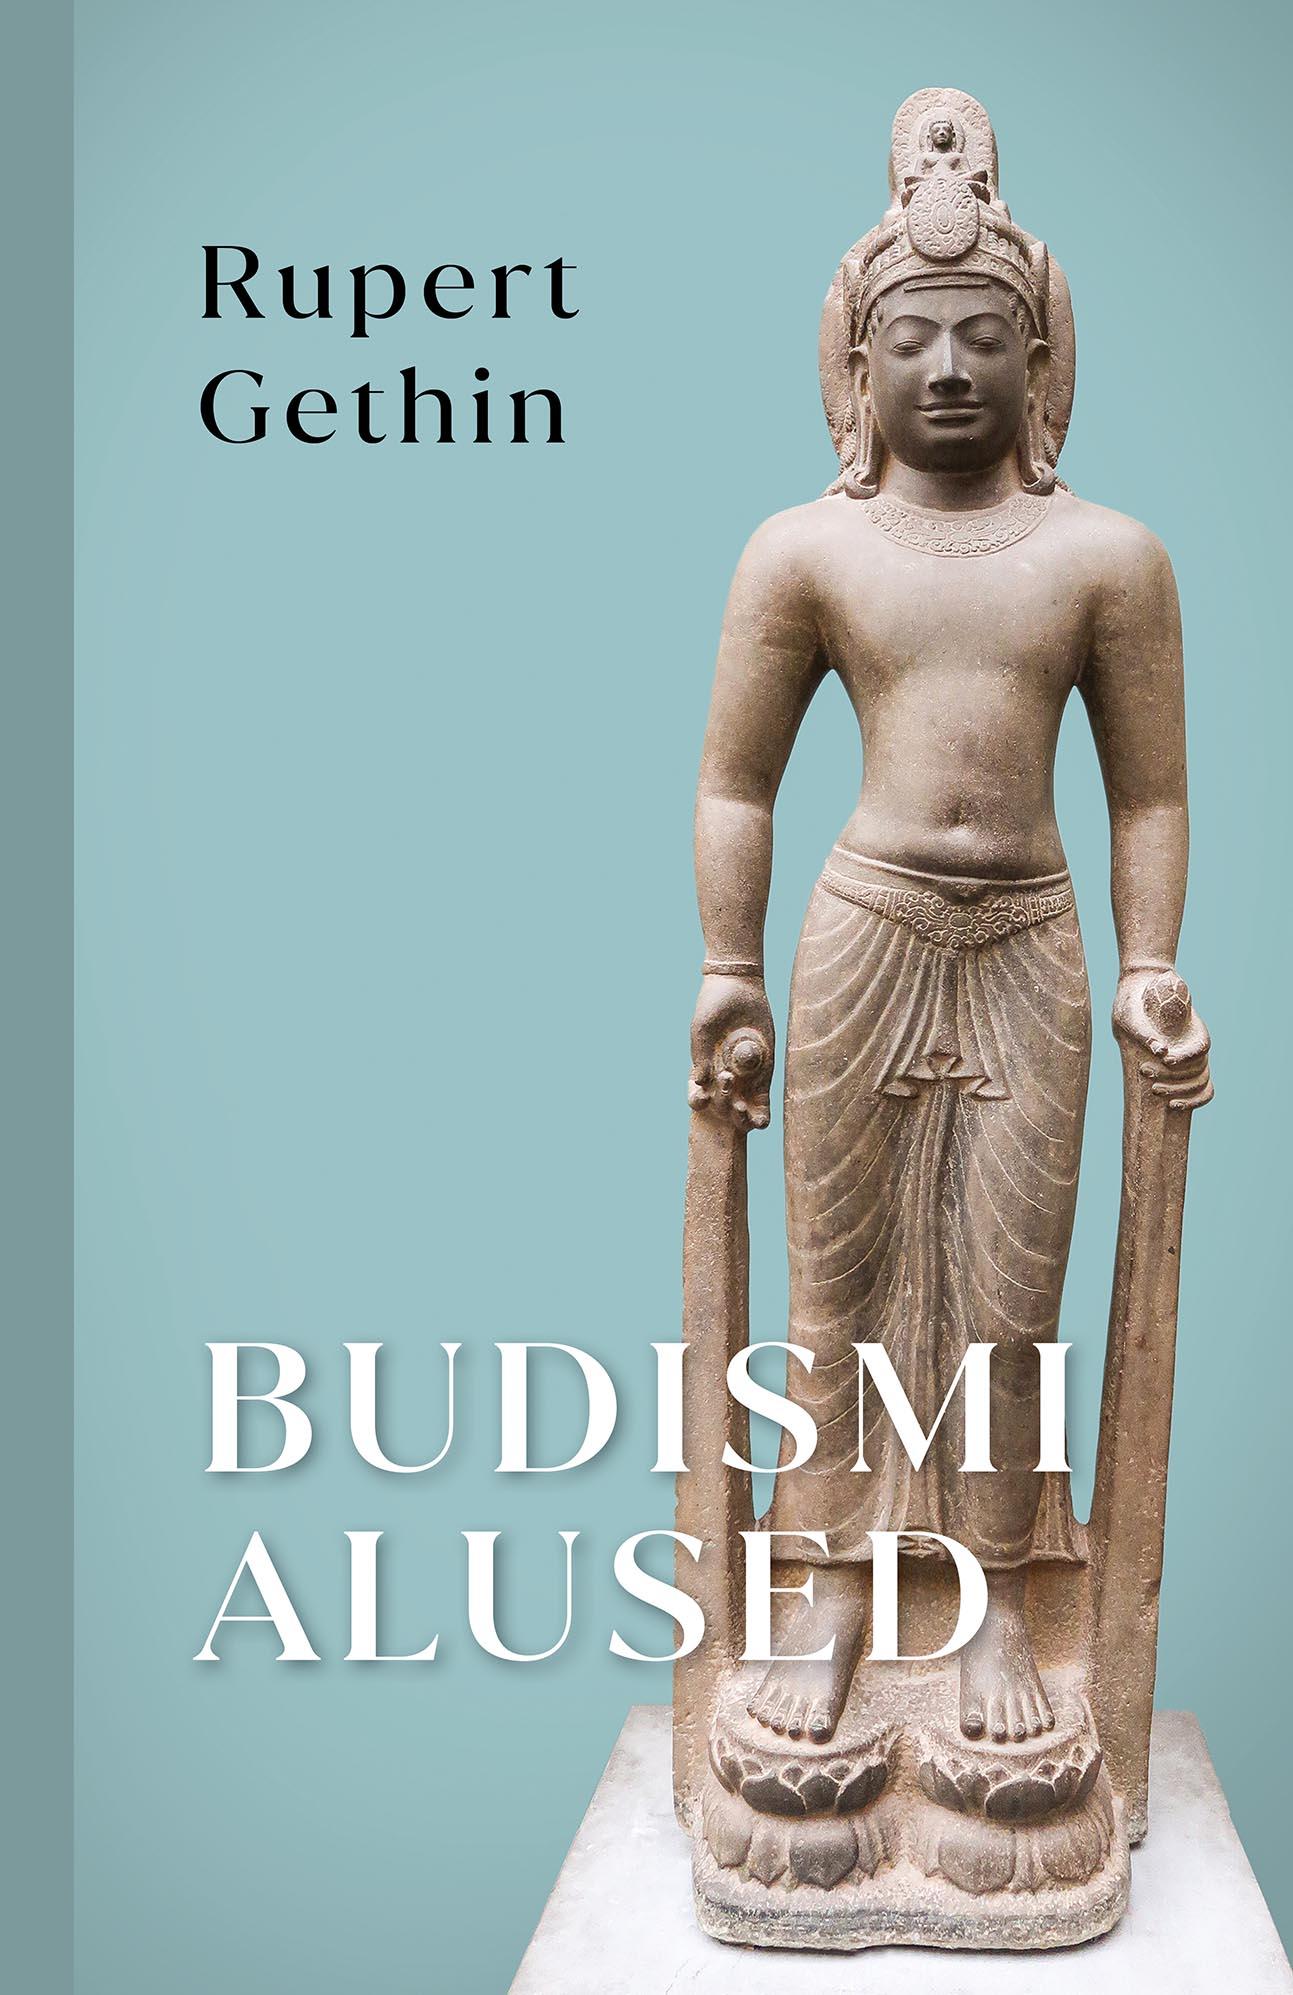 Budismi alused